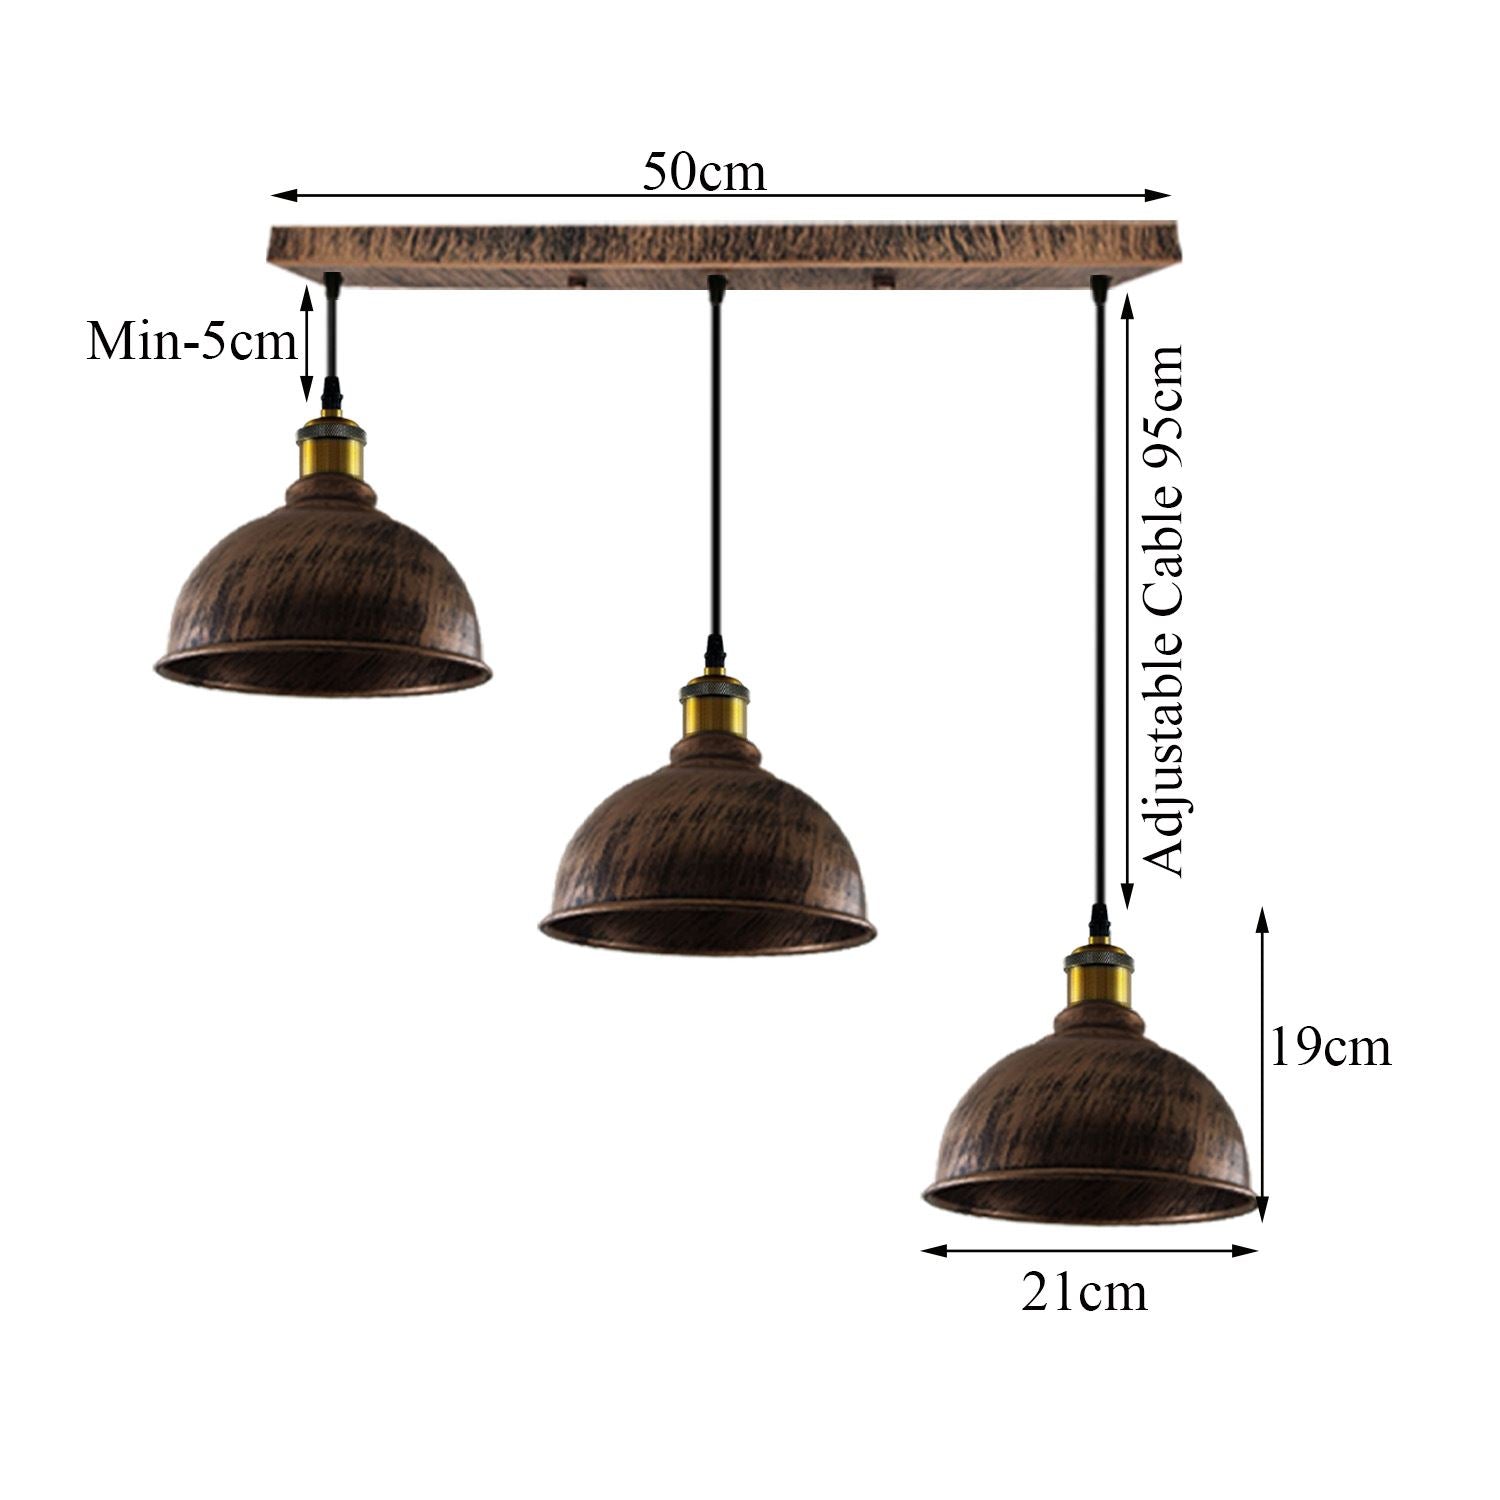 Vintage Industrial Brushed Copper Indoor Hanging Adjustable Pendant Light Metal Mug Cage Ceiling Chandelier~3386 - LEDSone UK Ltd